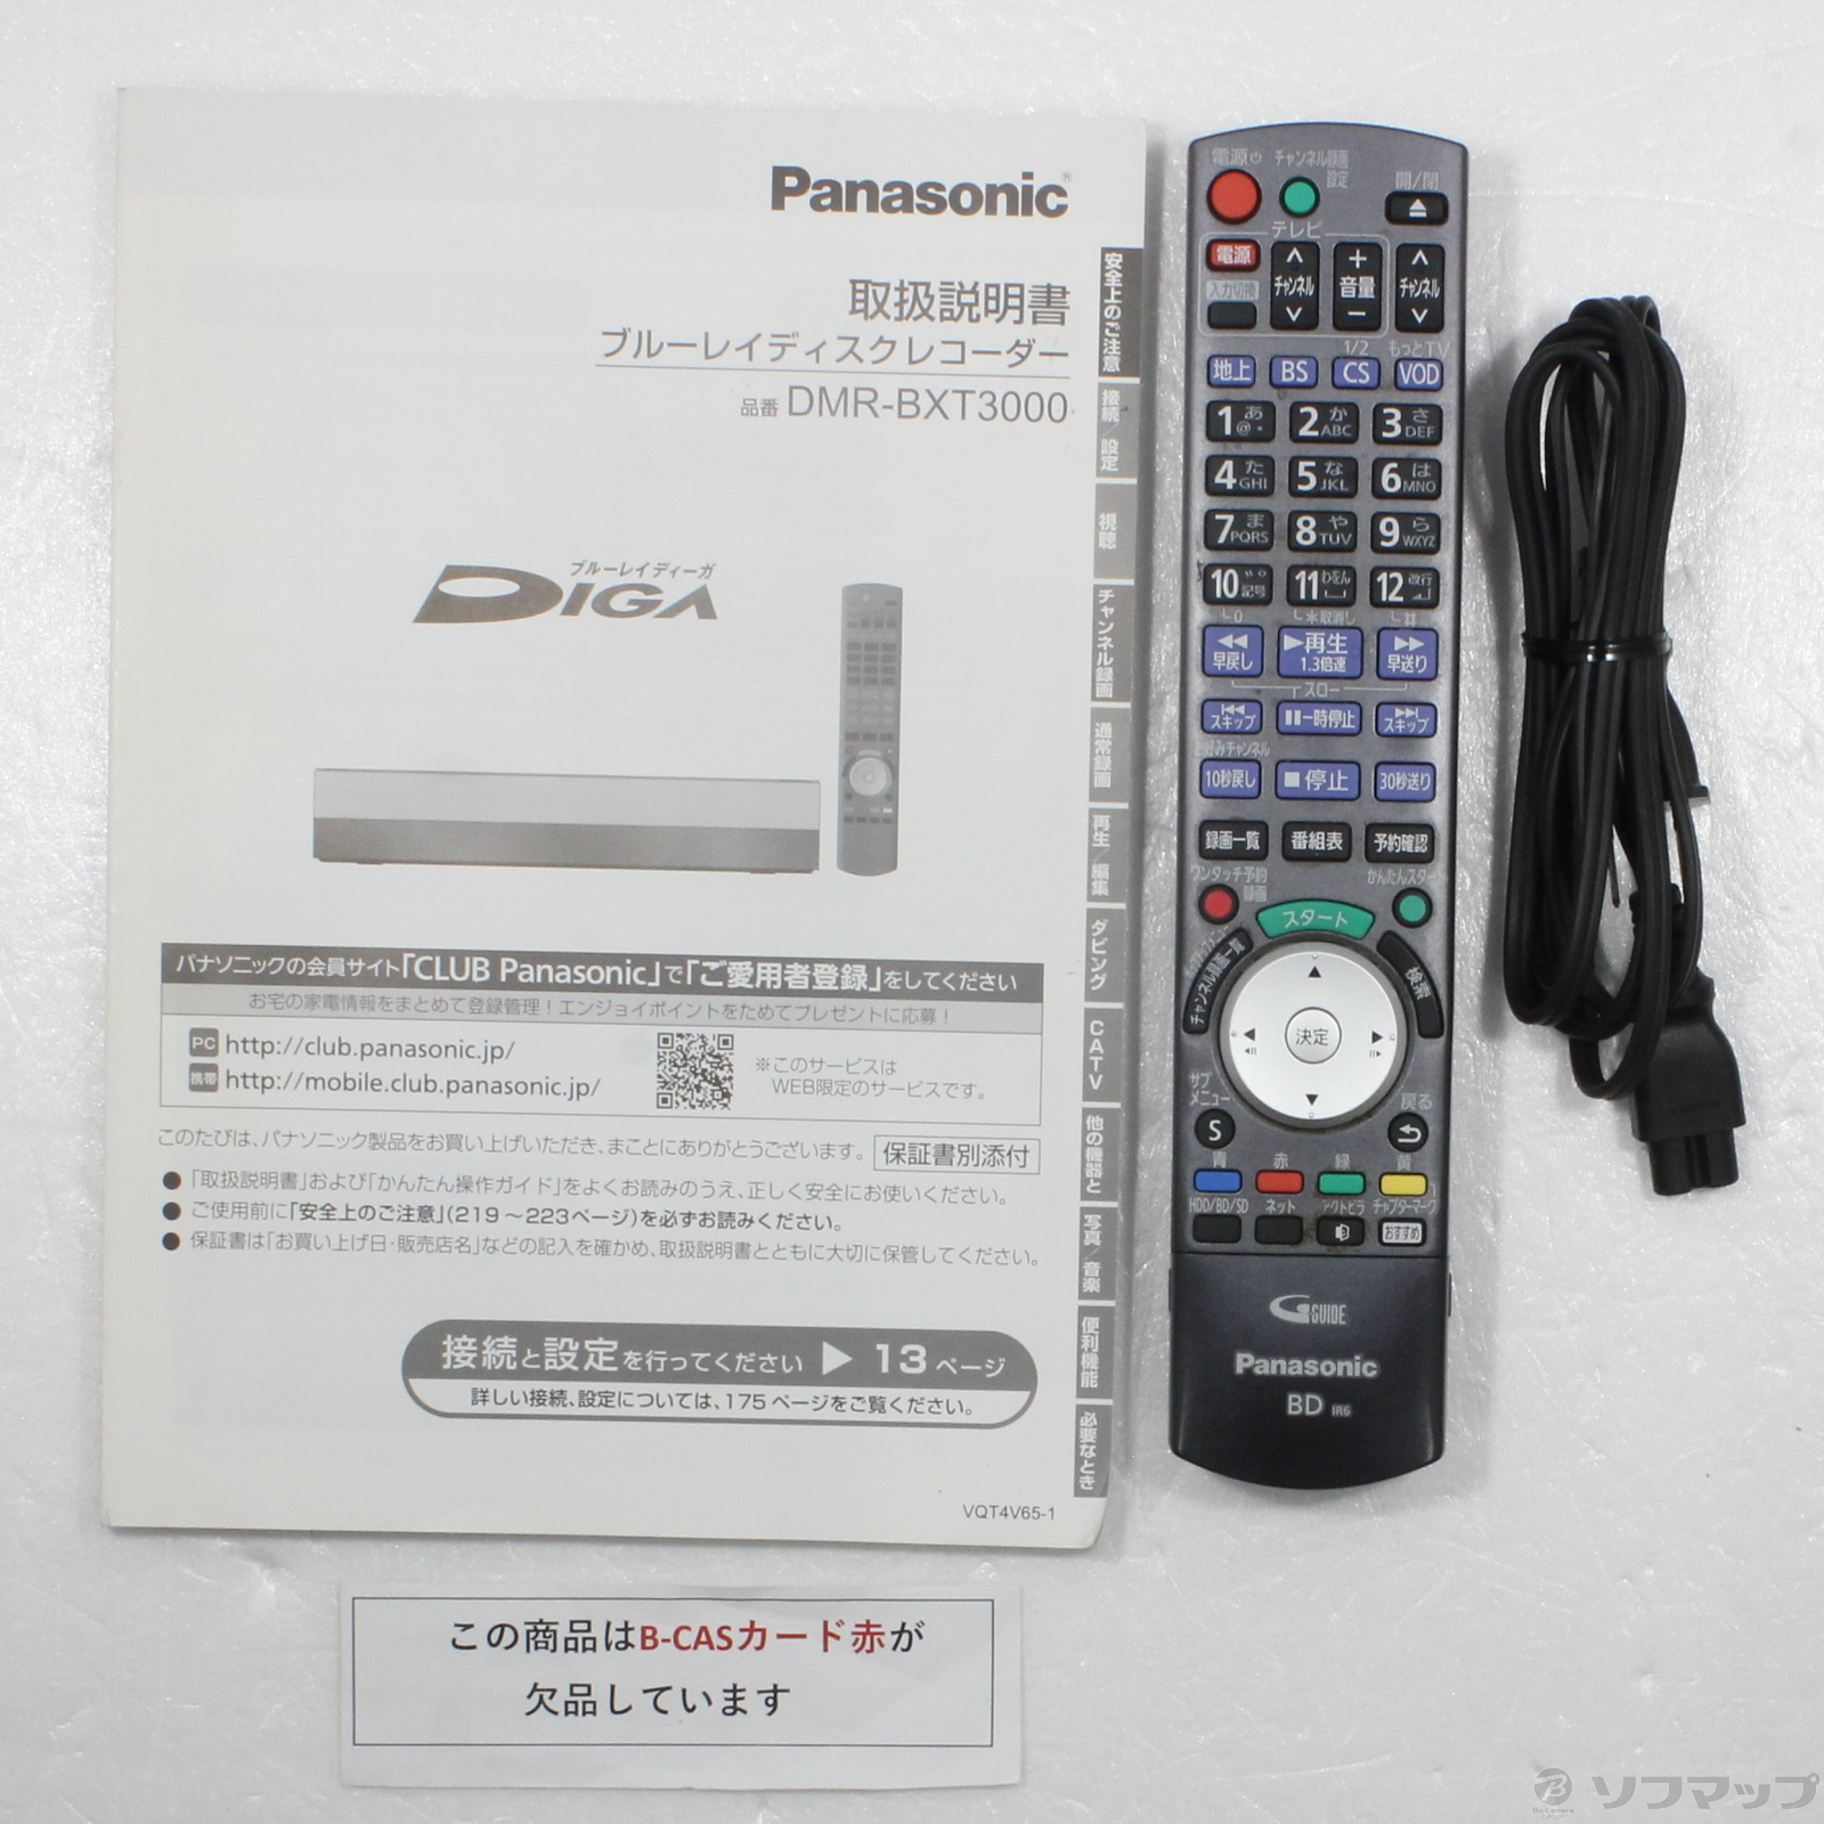 同確済 Panasonic DIGA DMR-BXT3000 レコーダー 2TB内容 - レコーダー